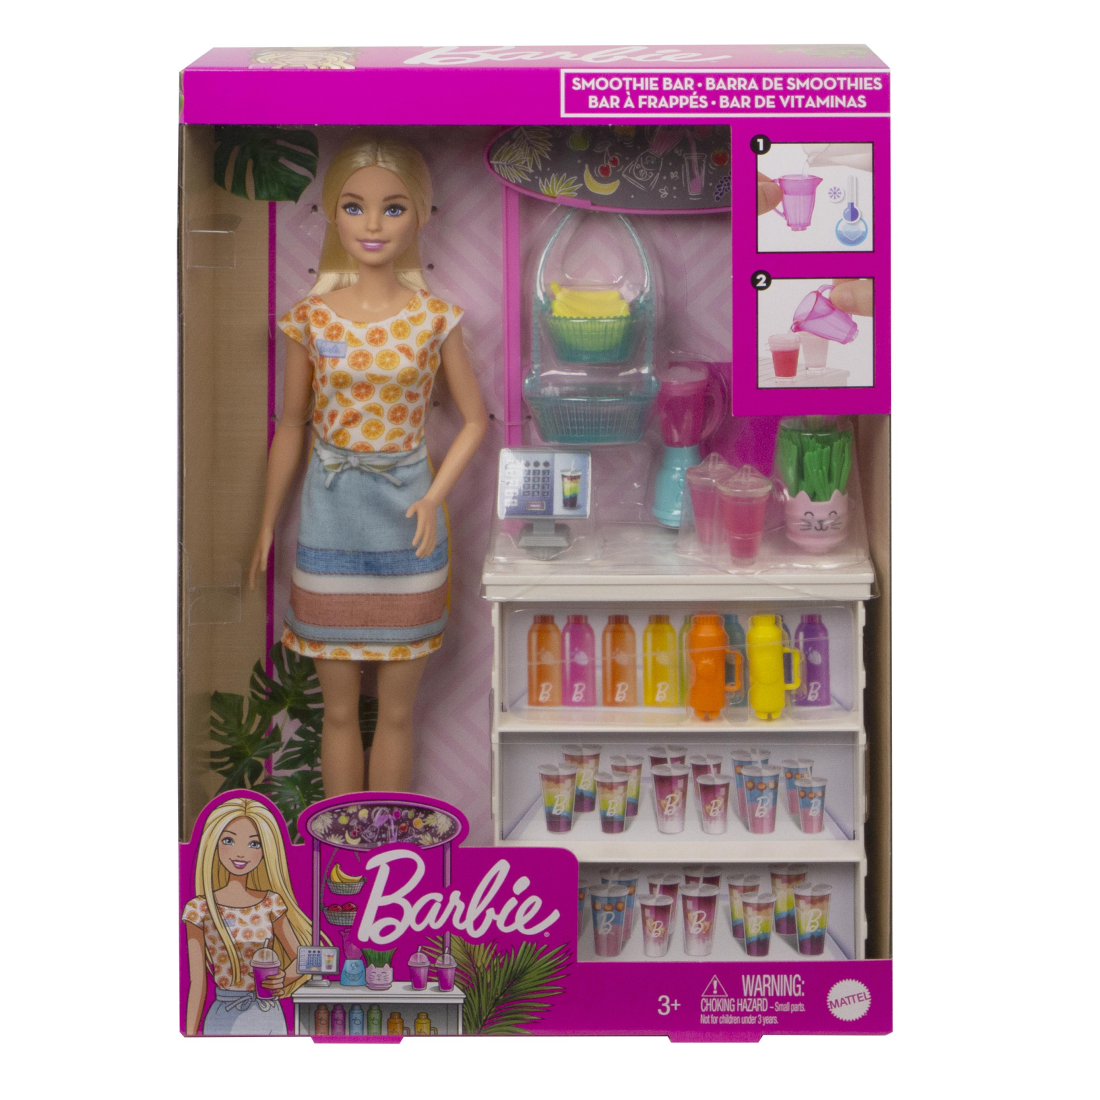 Barbie - Wellness - Smoothie Bar